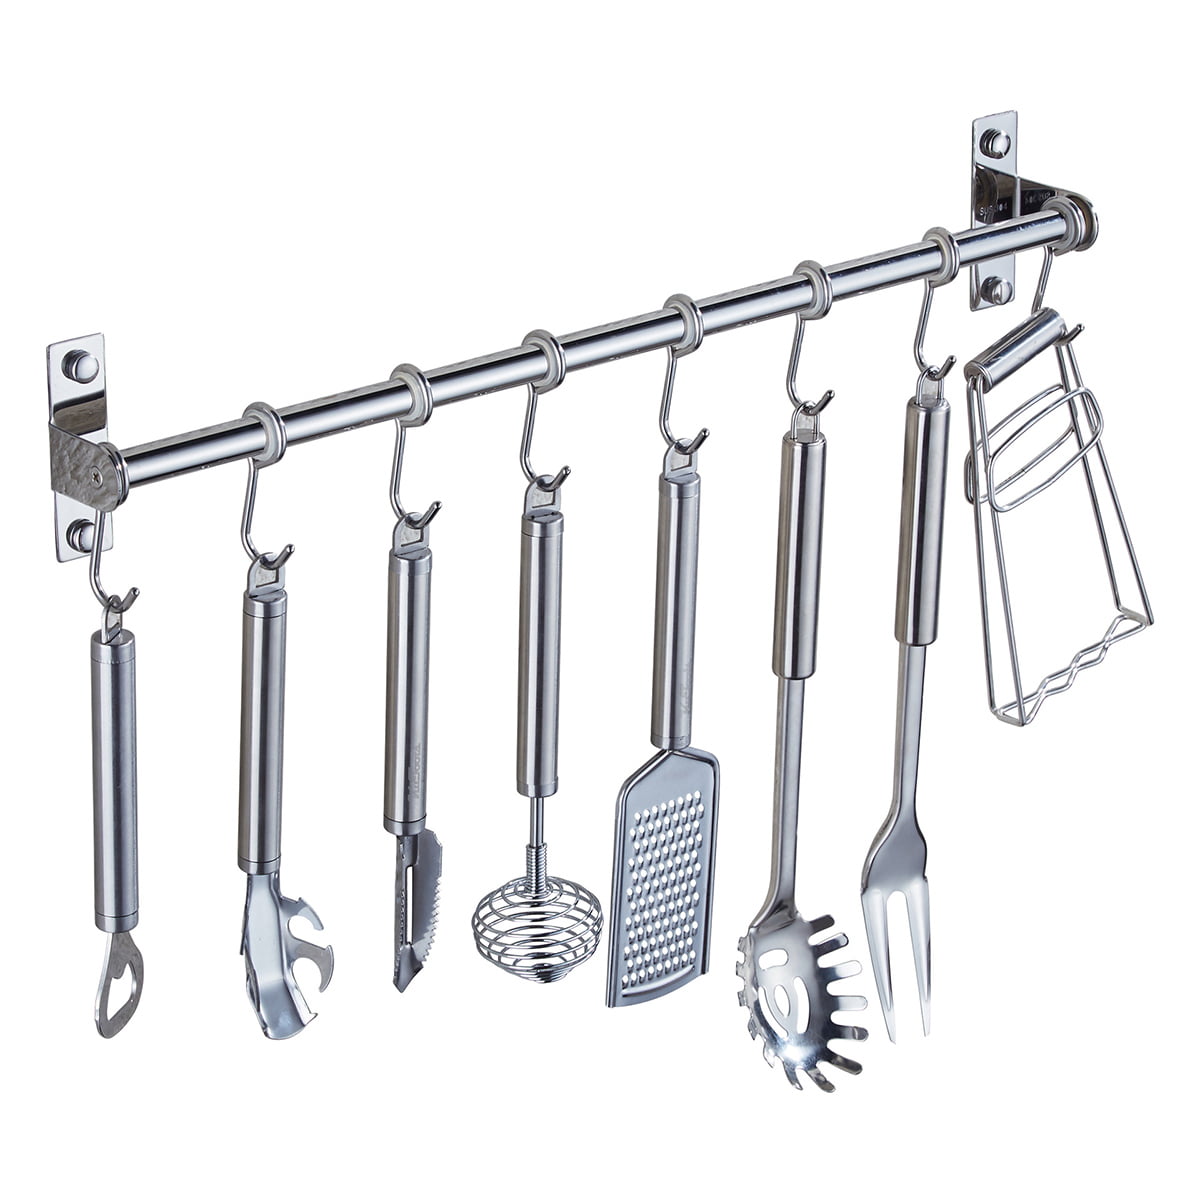 2 x Wall Mounted Kitchen Utensil Holder Tool Hanging Rail Organiser Rack 6 Hooks 